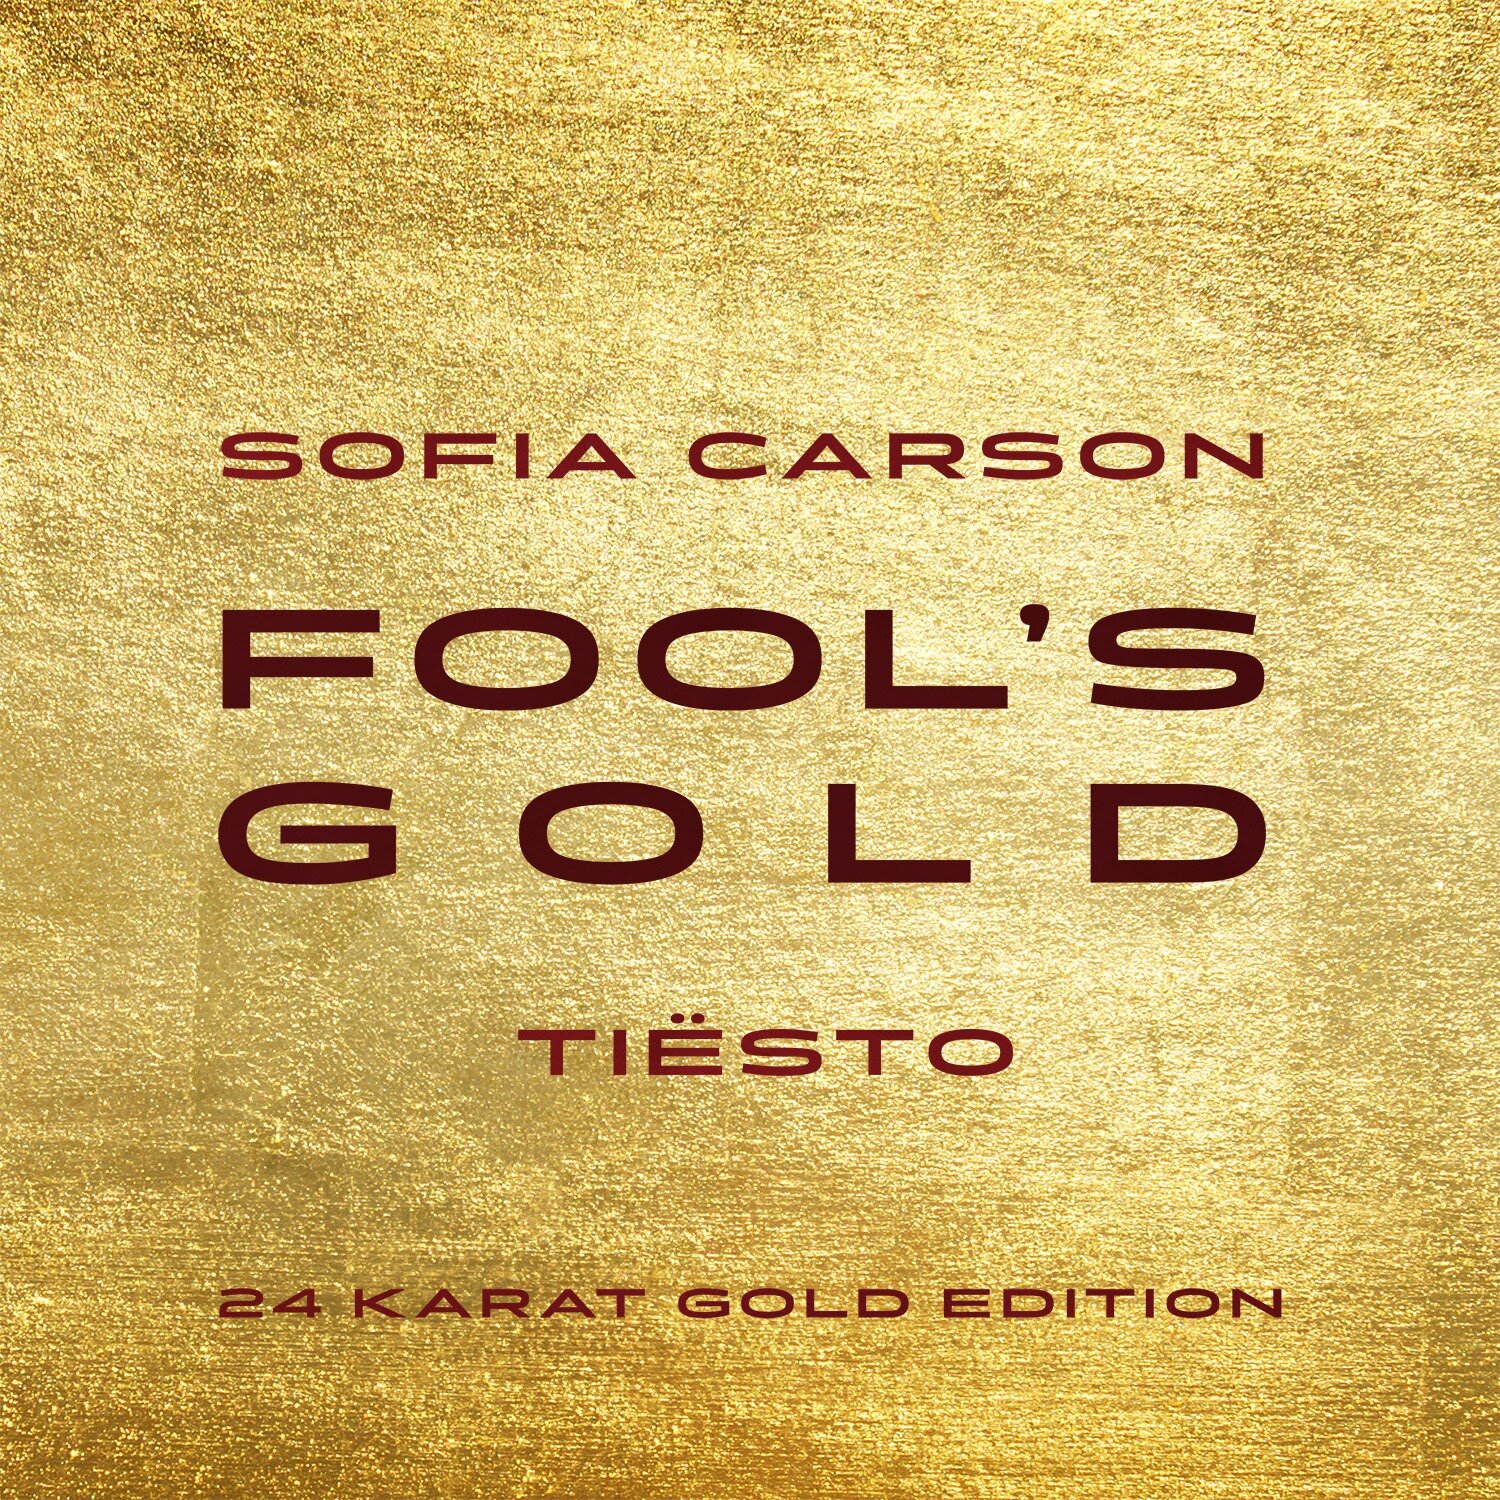 Ouça o remix oficial de Tiësto para a canção "Fools Gold" de Sofia Carson